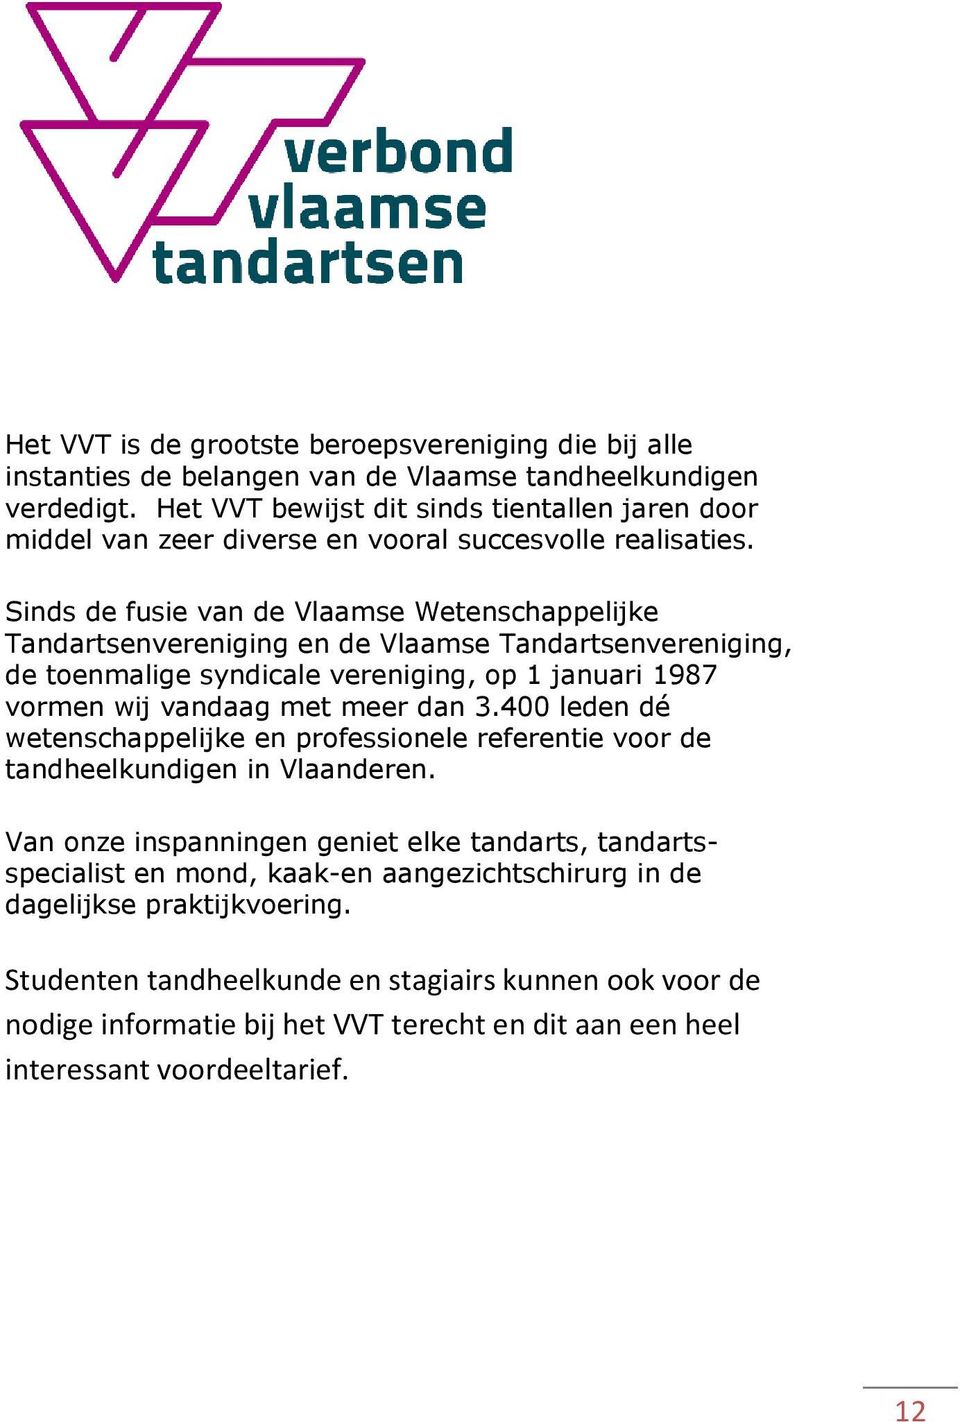 Sinds de fusie van de Vlaamse Wetenschappelijke Tandartsenvereniging en de Vlaamse Tandartsenvereniging, de toenmalige syndicale vereniging, op 1 januari 1987 vormen wij vandaag met meer dan 3.